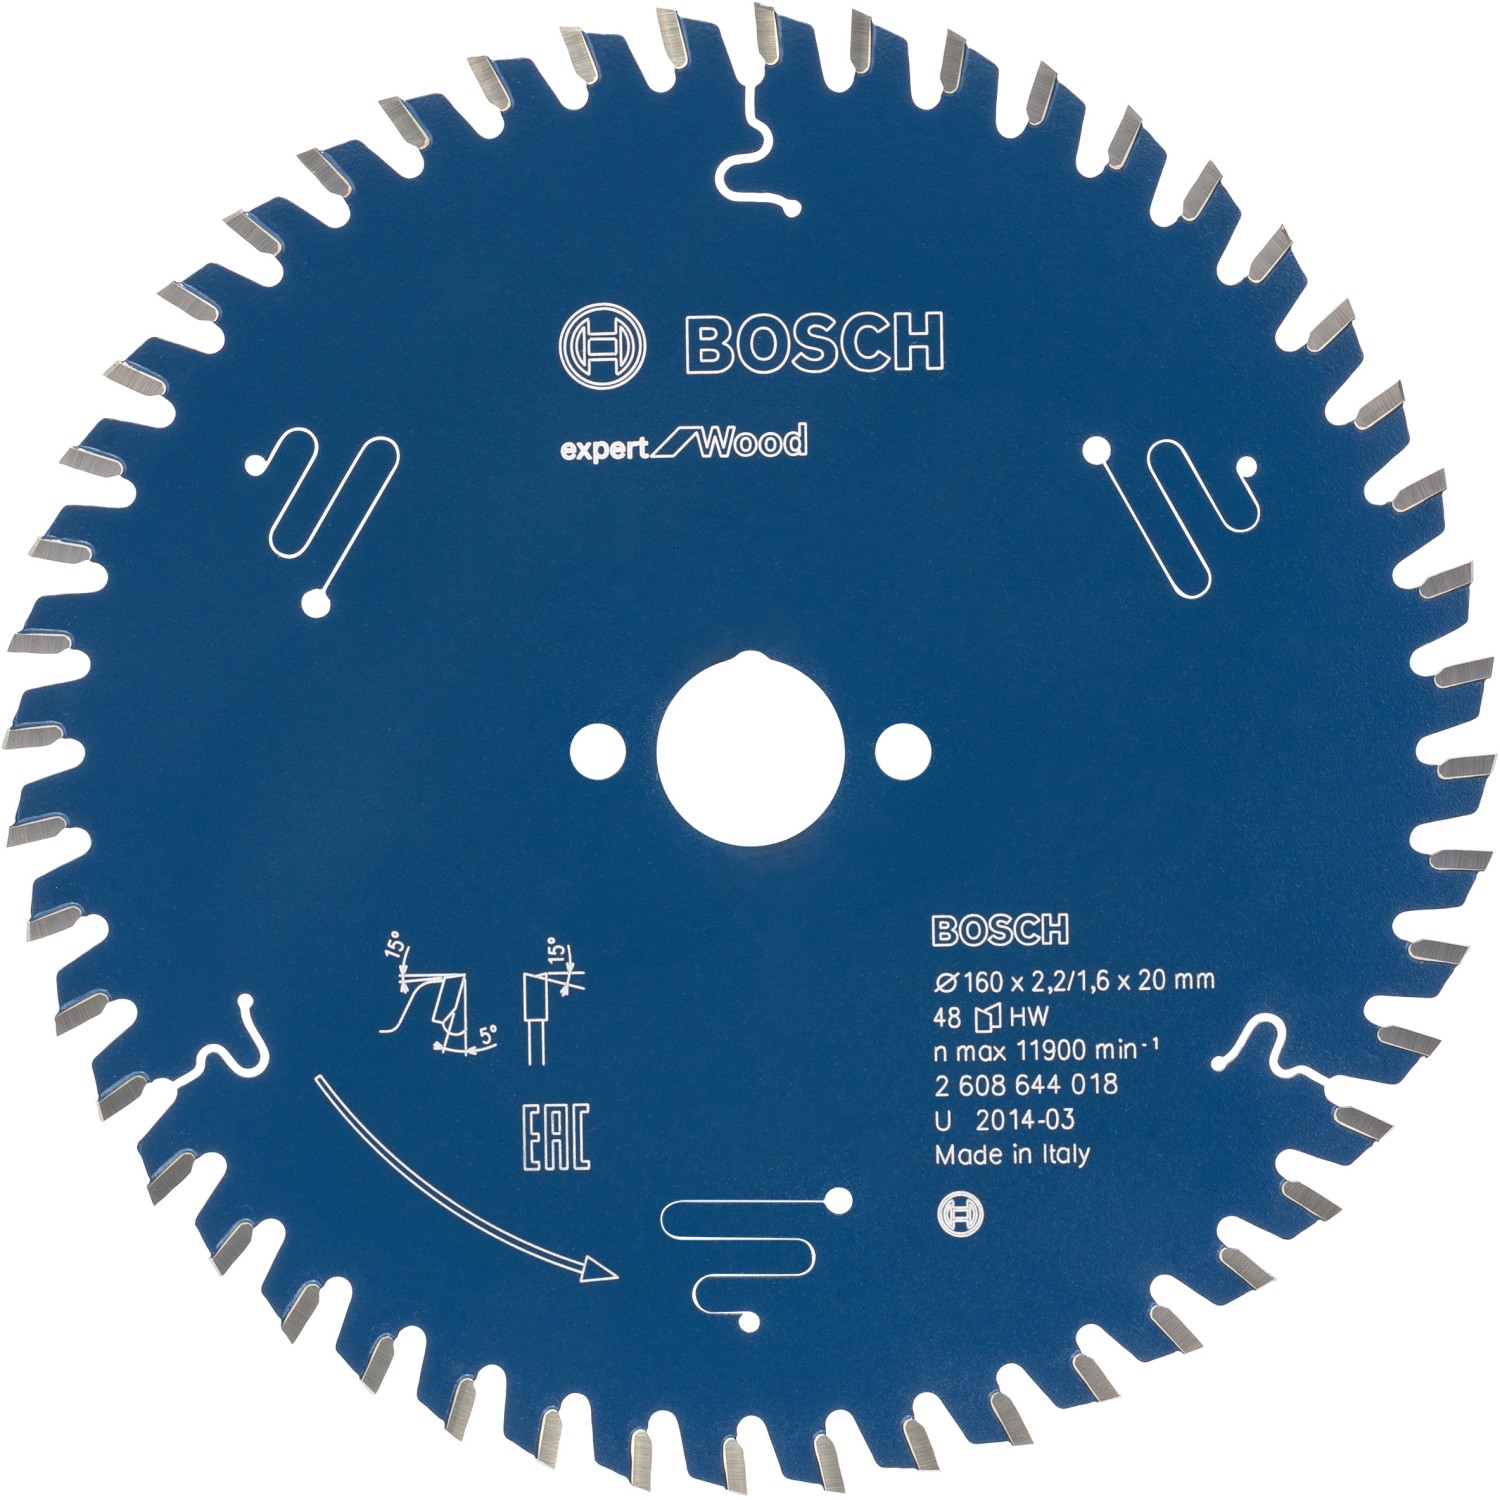 Bosch Kreissägeblatt Expert for Wood 160 mm x 20 mm x 2,2 mm